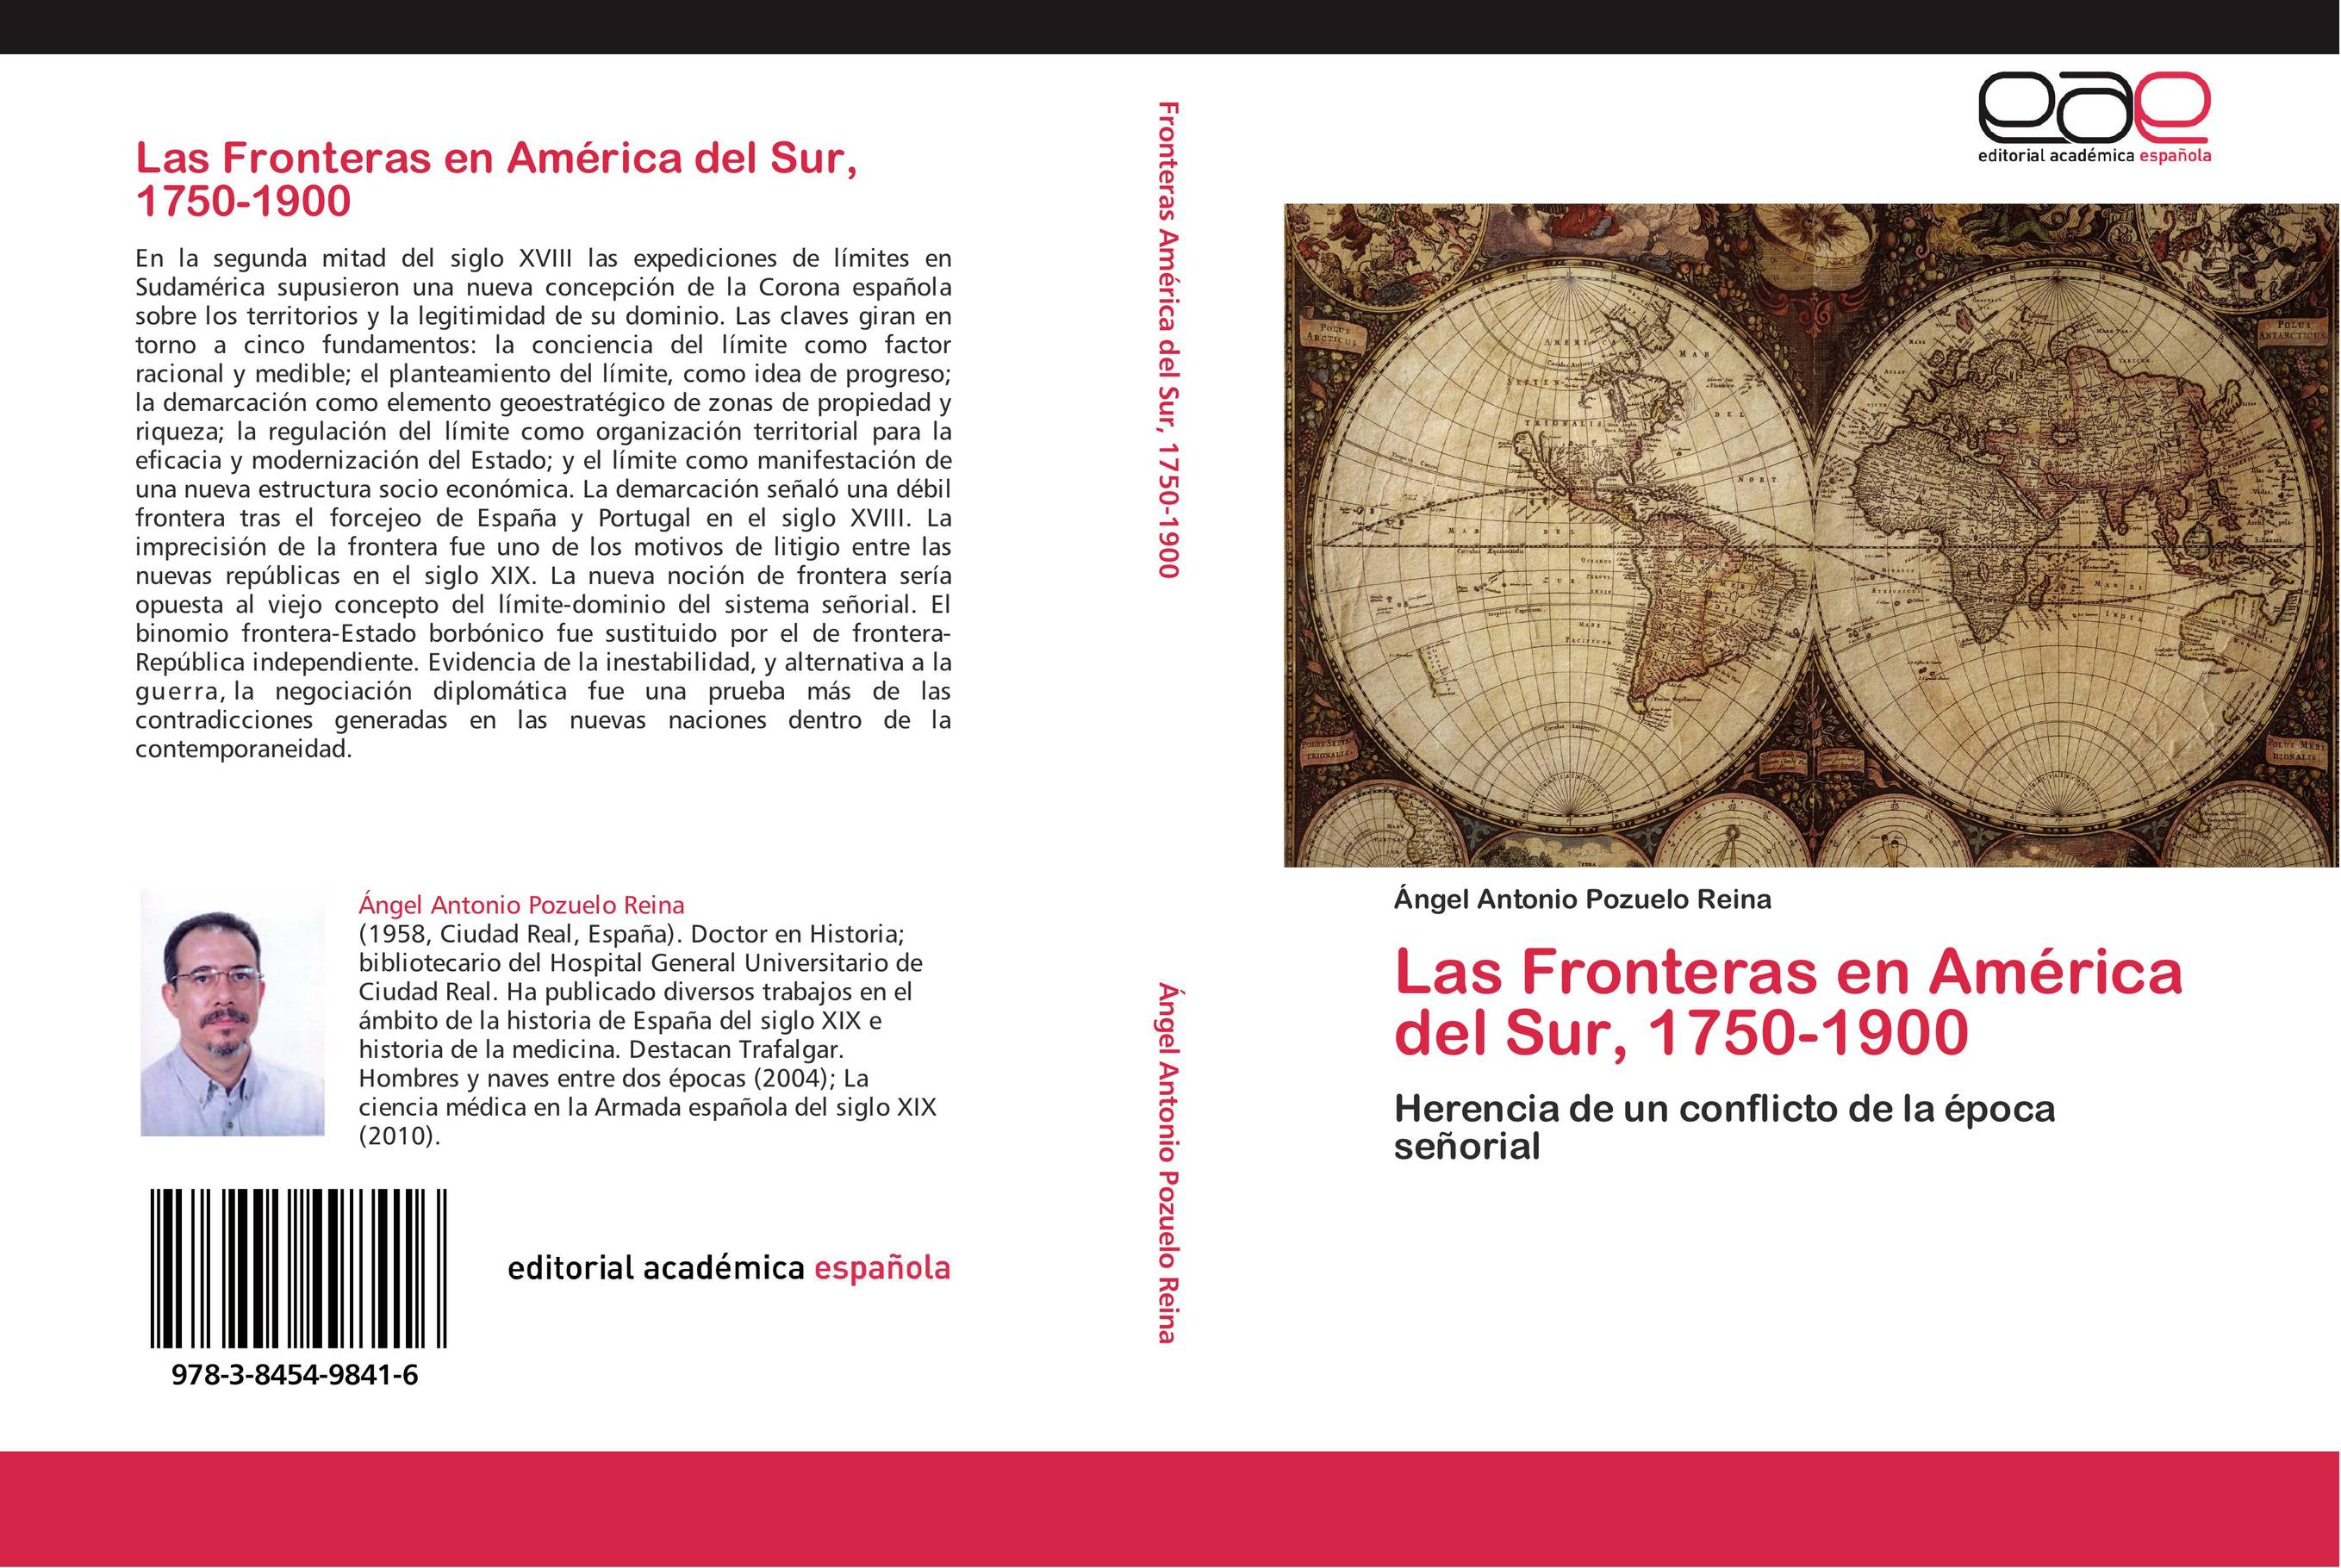 Las Fronteras en América del Sur, 1750-1900